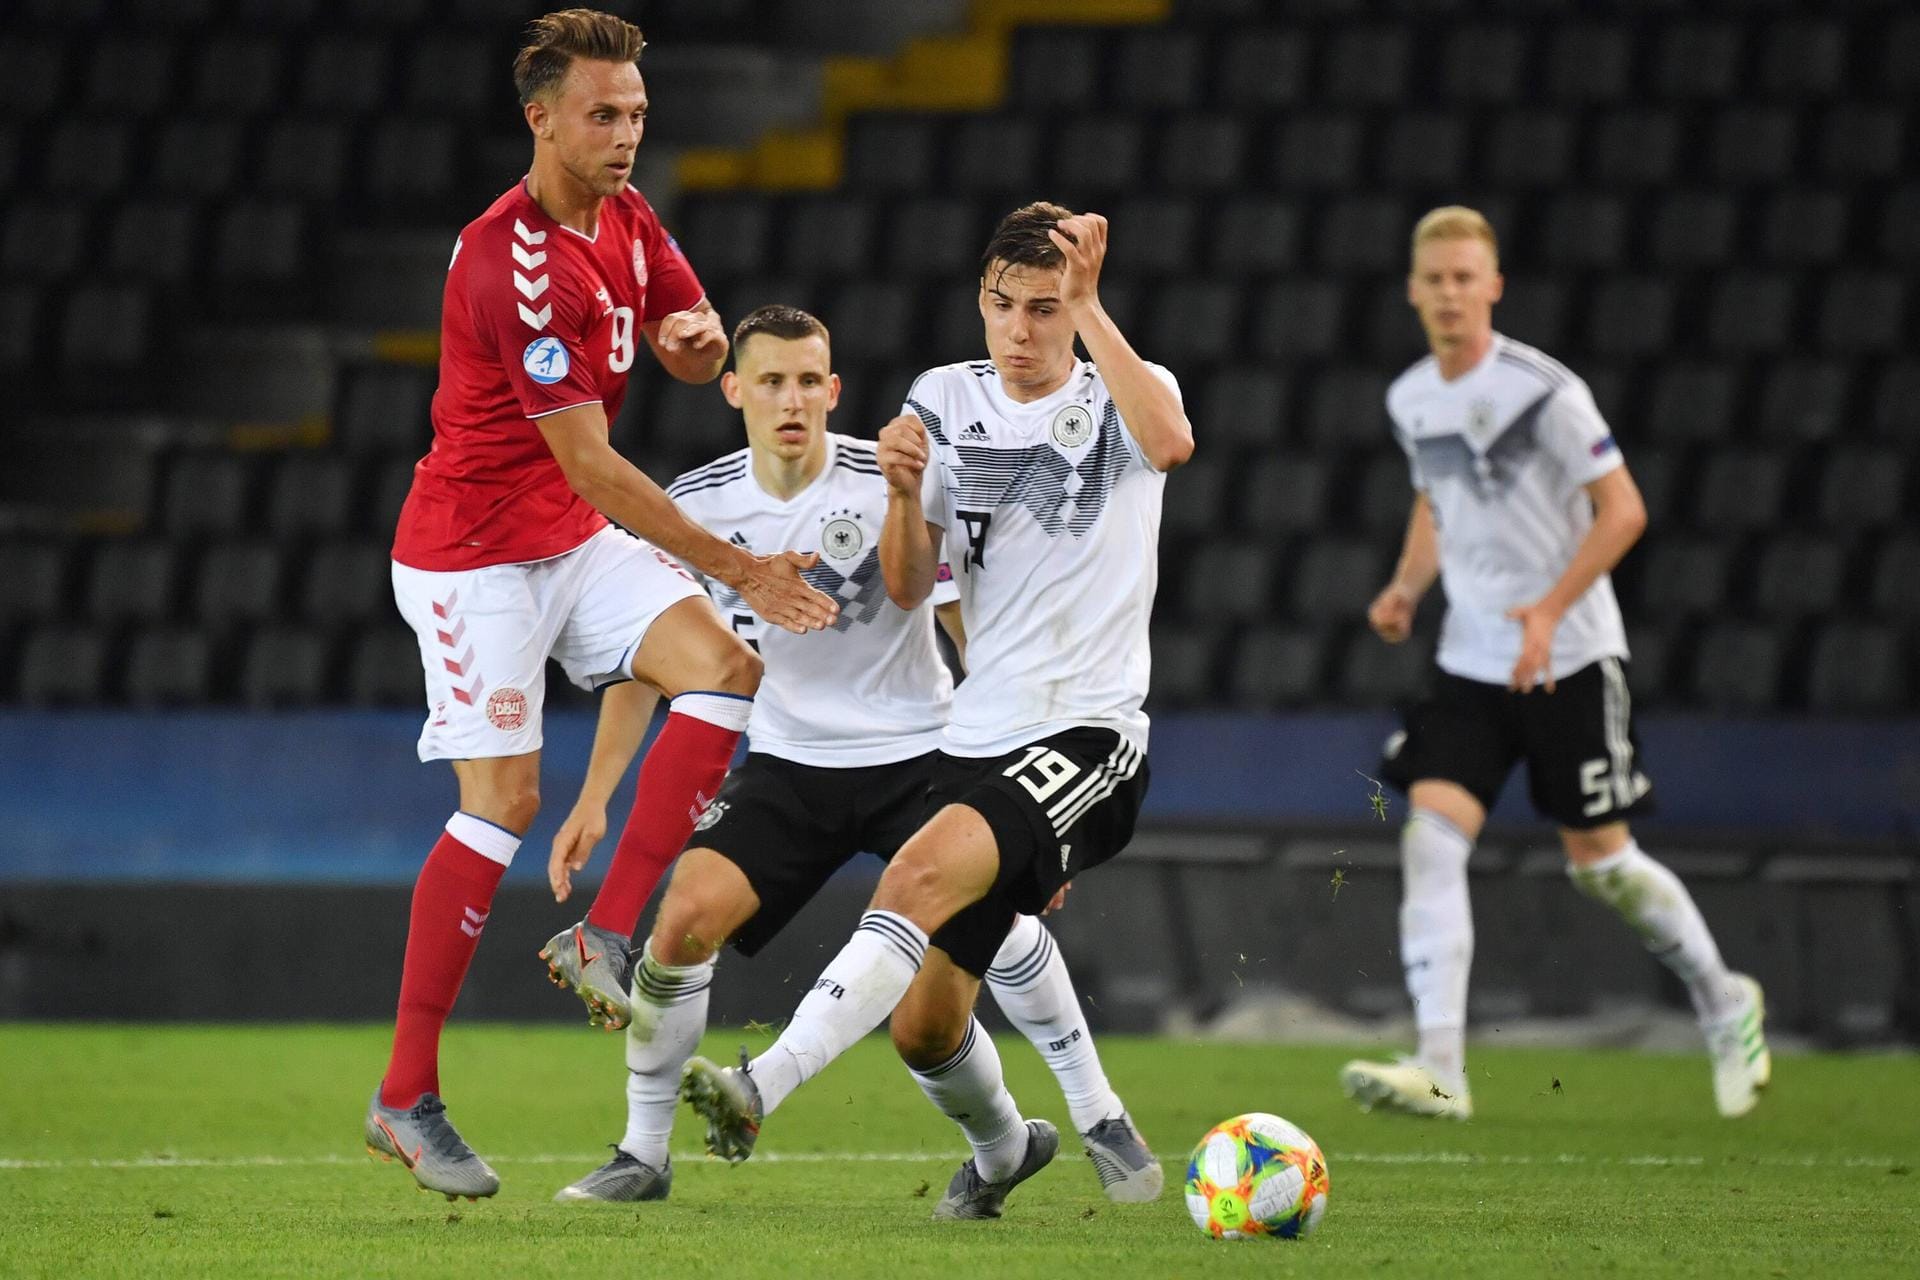 Florian Neuhaus (Borussia Mönchengladbach): Kam zur zweiten Halbzeit, um für etwas mehr Spielwitz im deutschen Spiel zu sorgen – konnte dabei auch durchaus seine Akzente setzen. Seine Geradlinigkeit tat dem DFB-Team gut. Note: 2